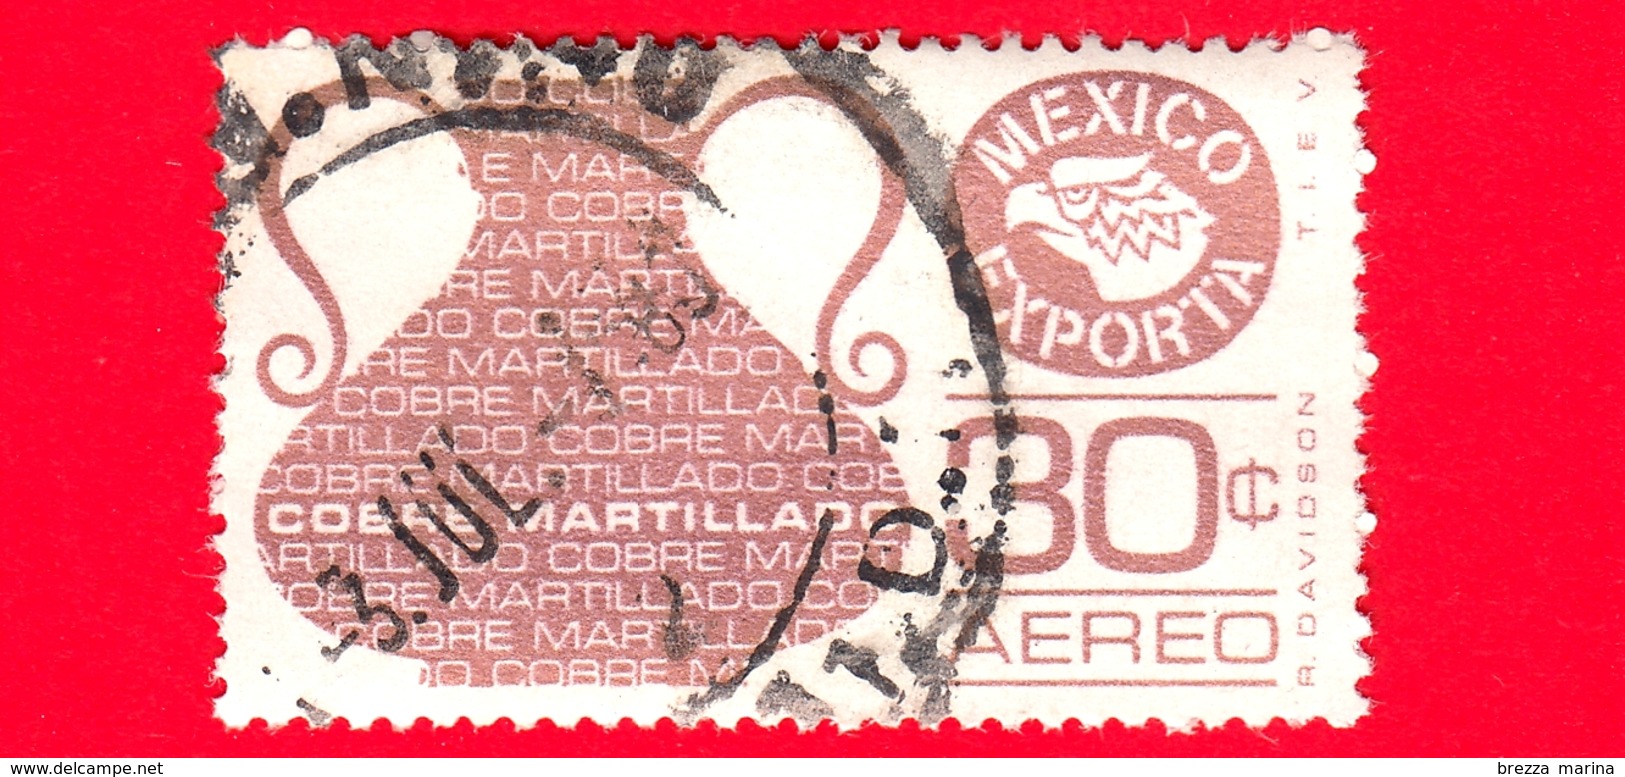 MESSICO - Usato - 1976 - Mexico Exporta - Rame - Cobre Martillado - Copper - 30 C - Posta Aerea - Messico